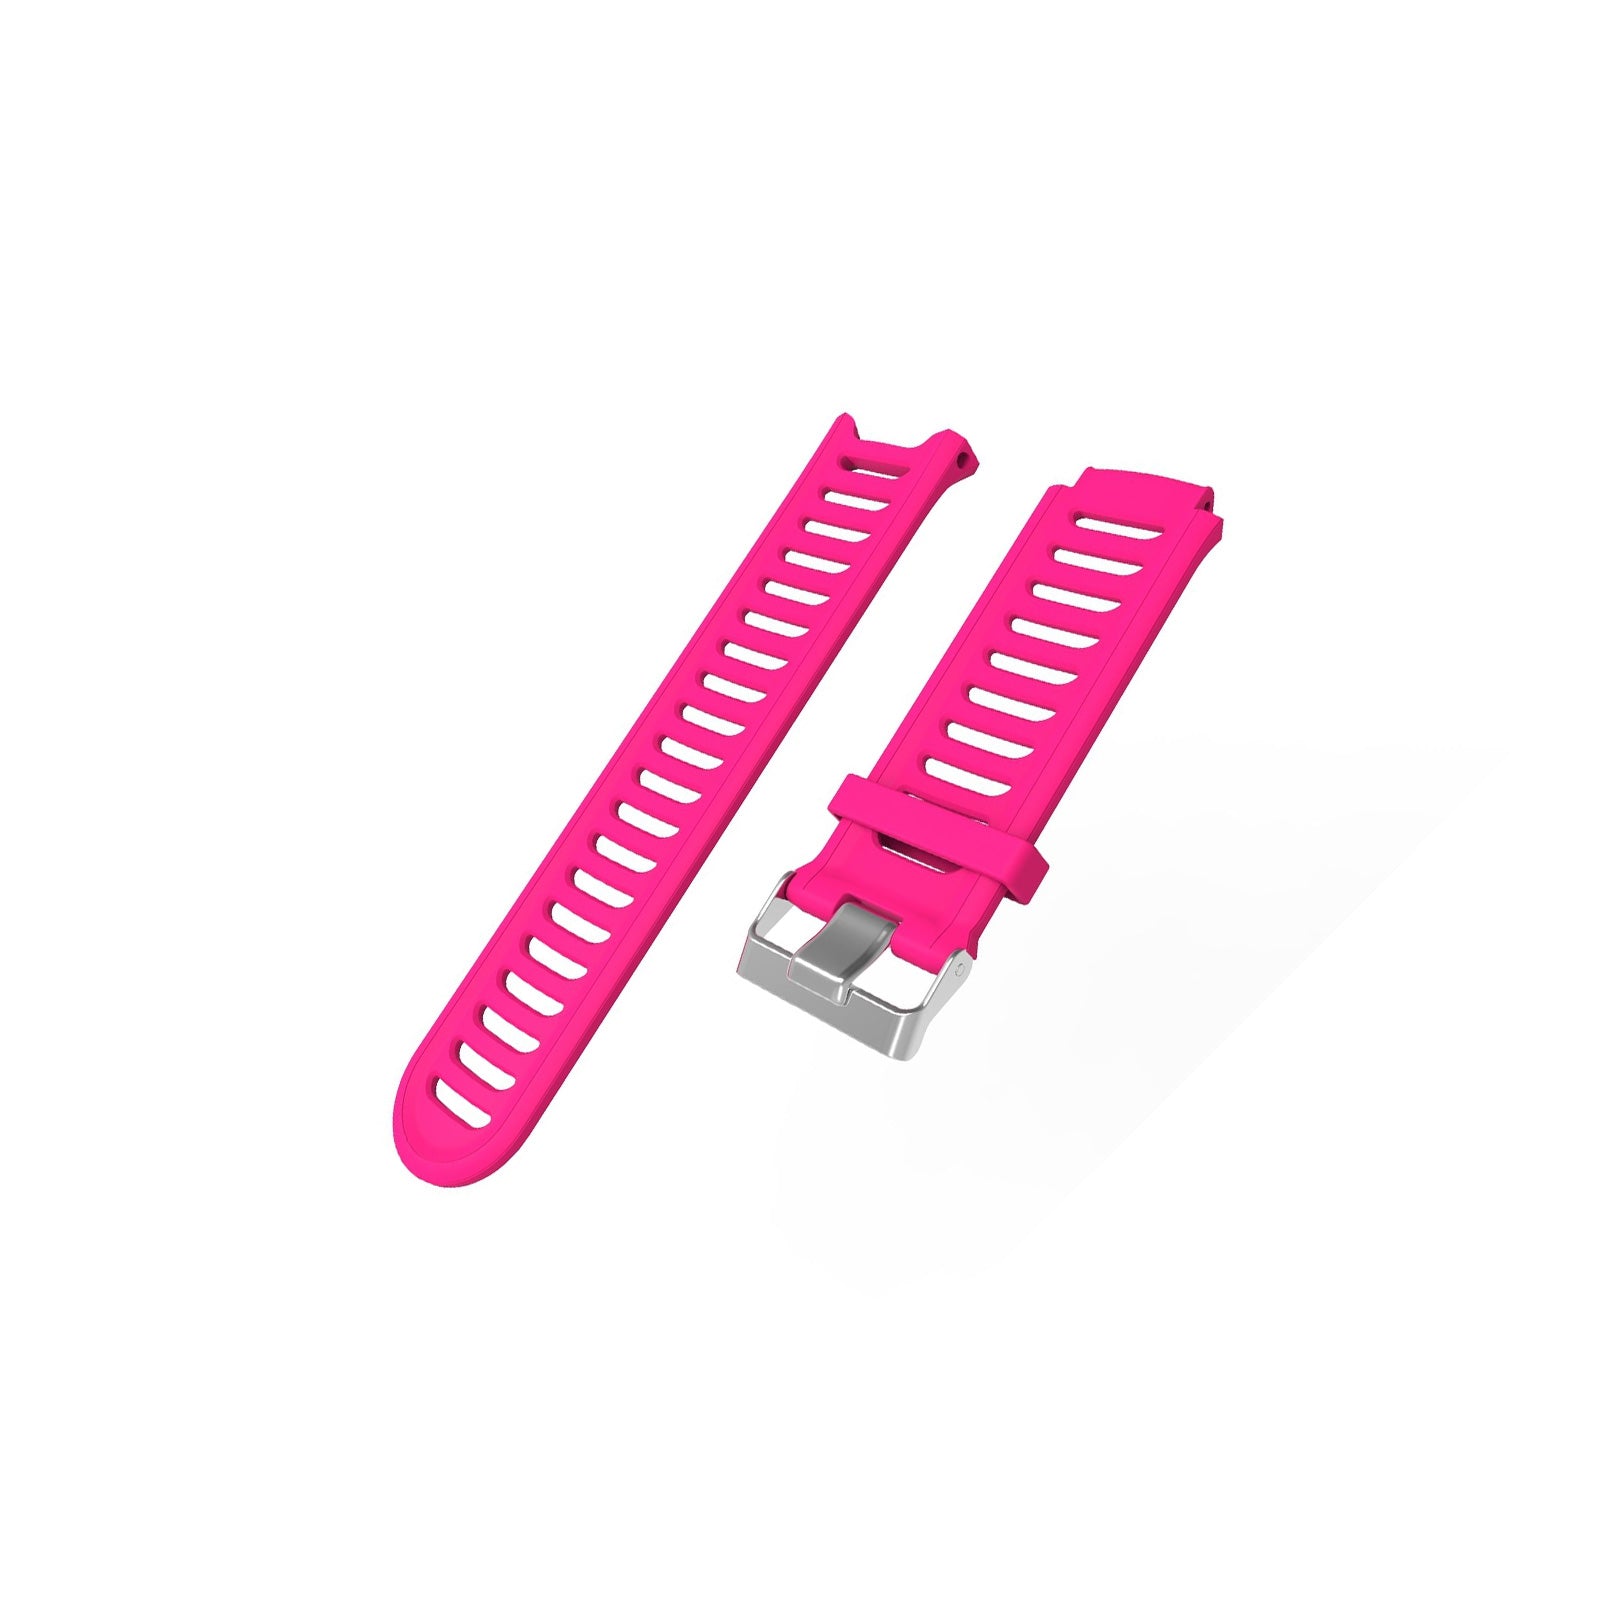 Forerunner 910 Pink Watch Strap